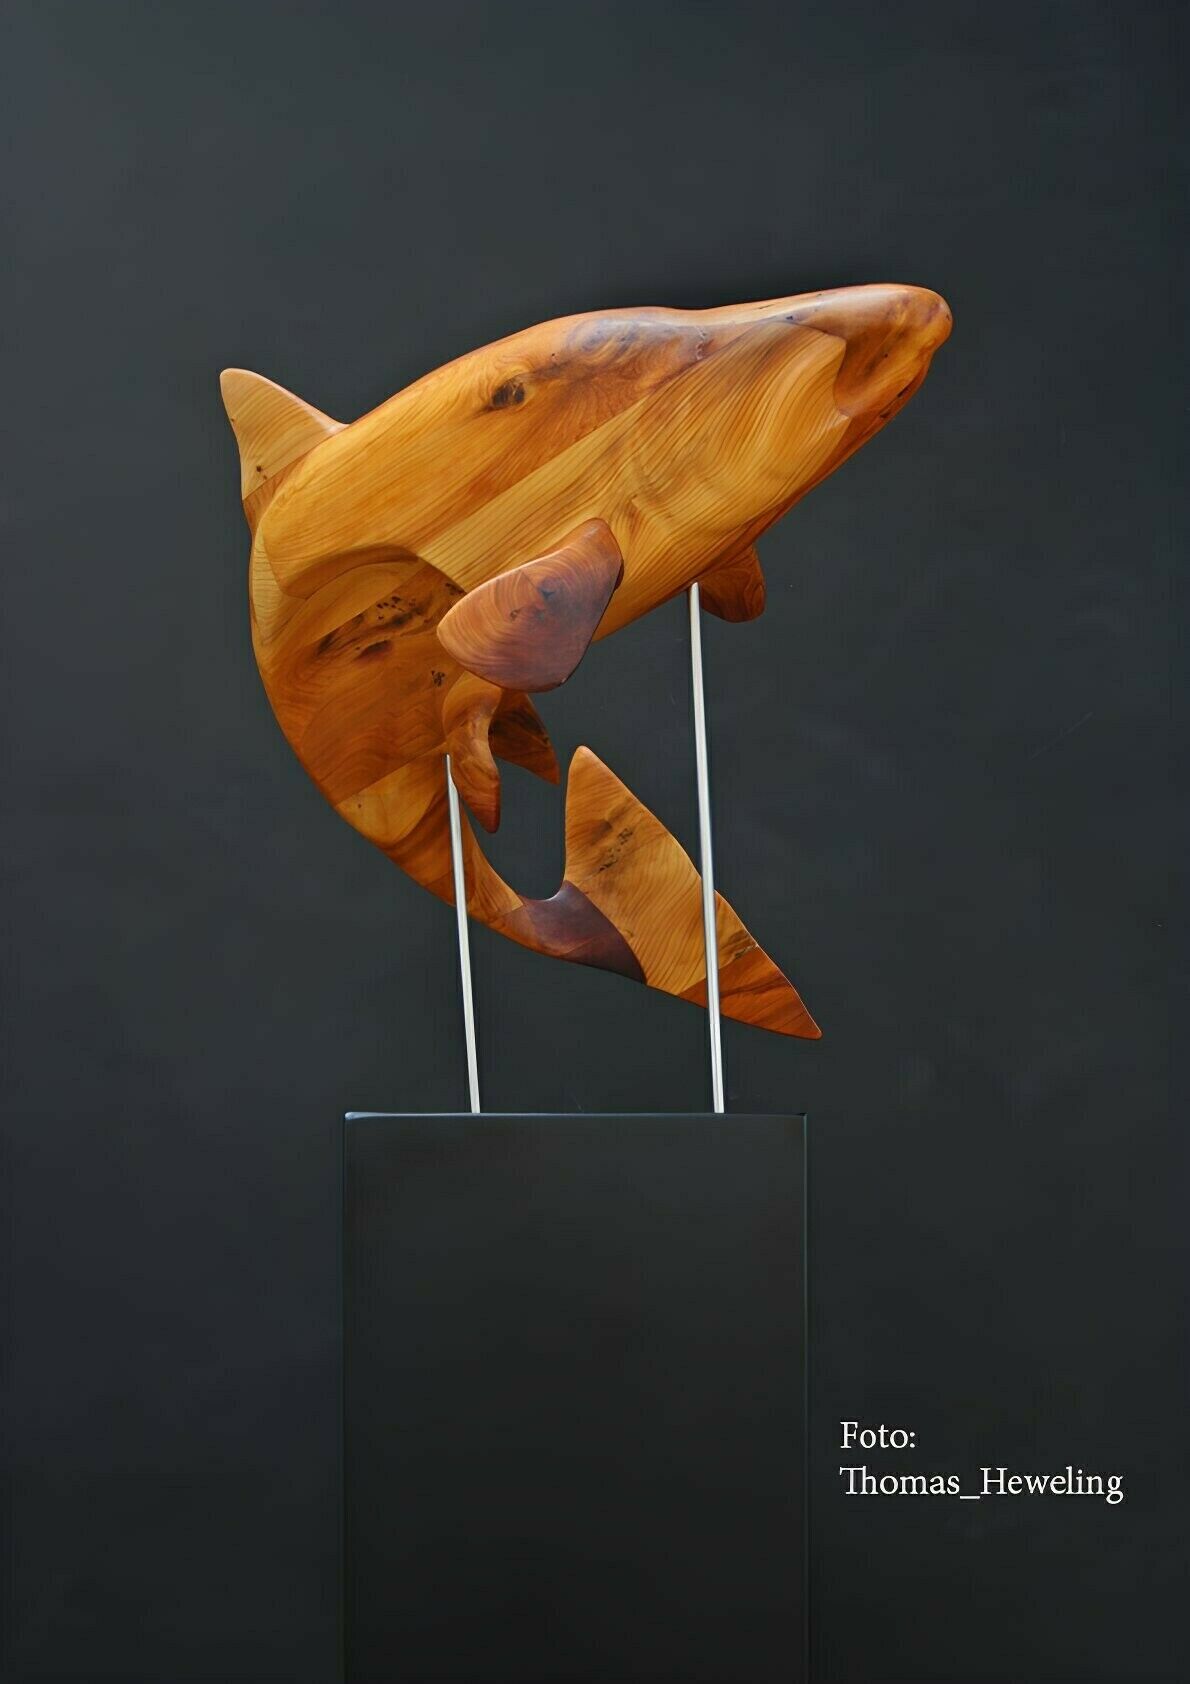 Skulptur "King Salmon" (2019)